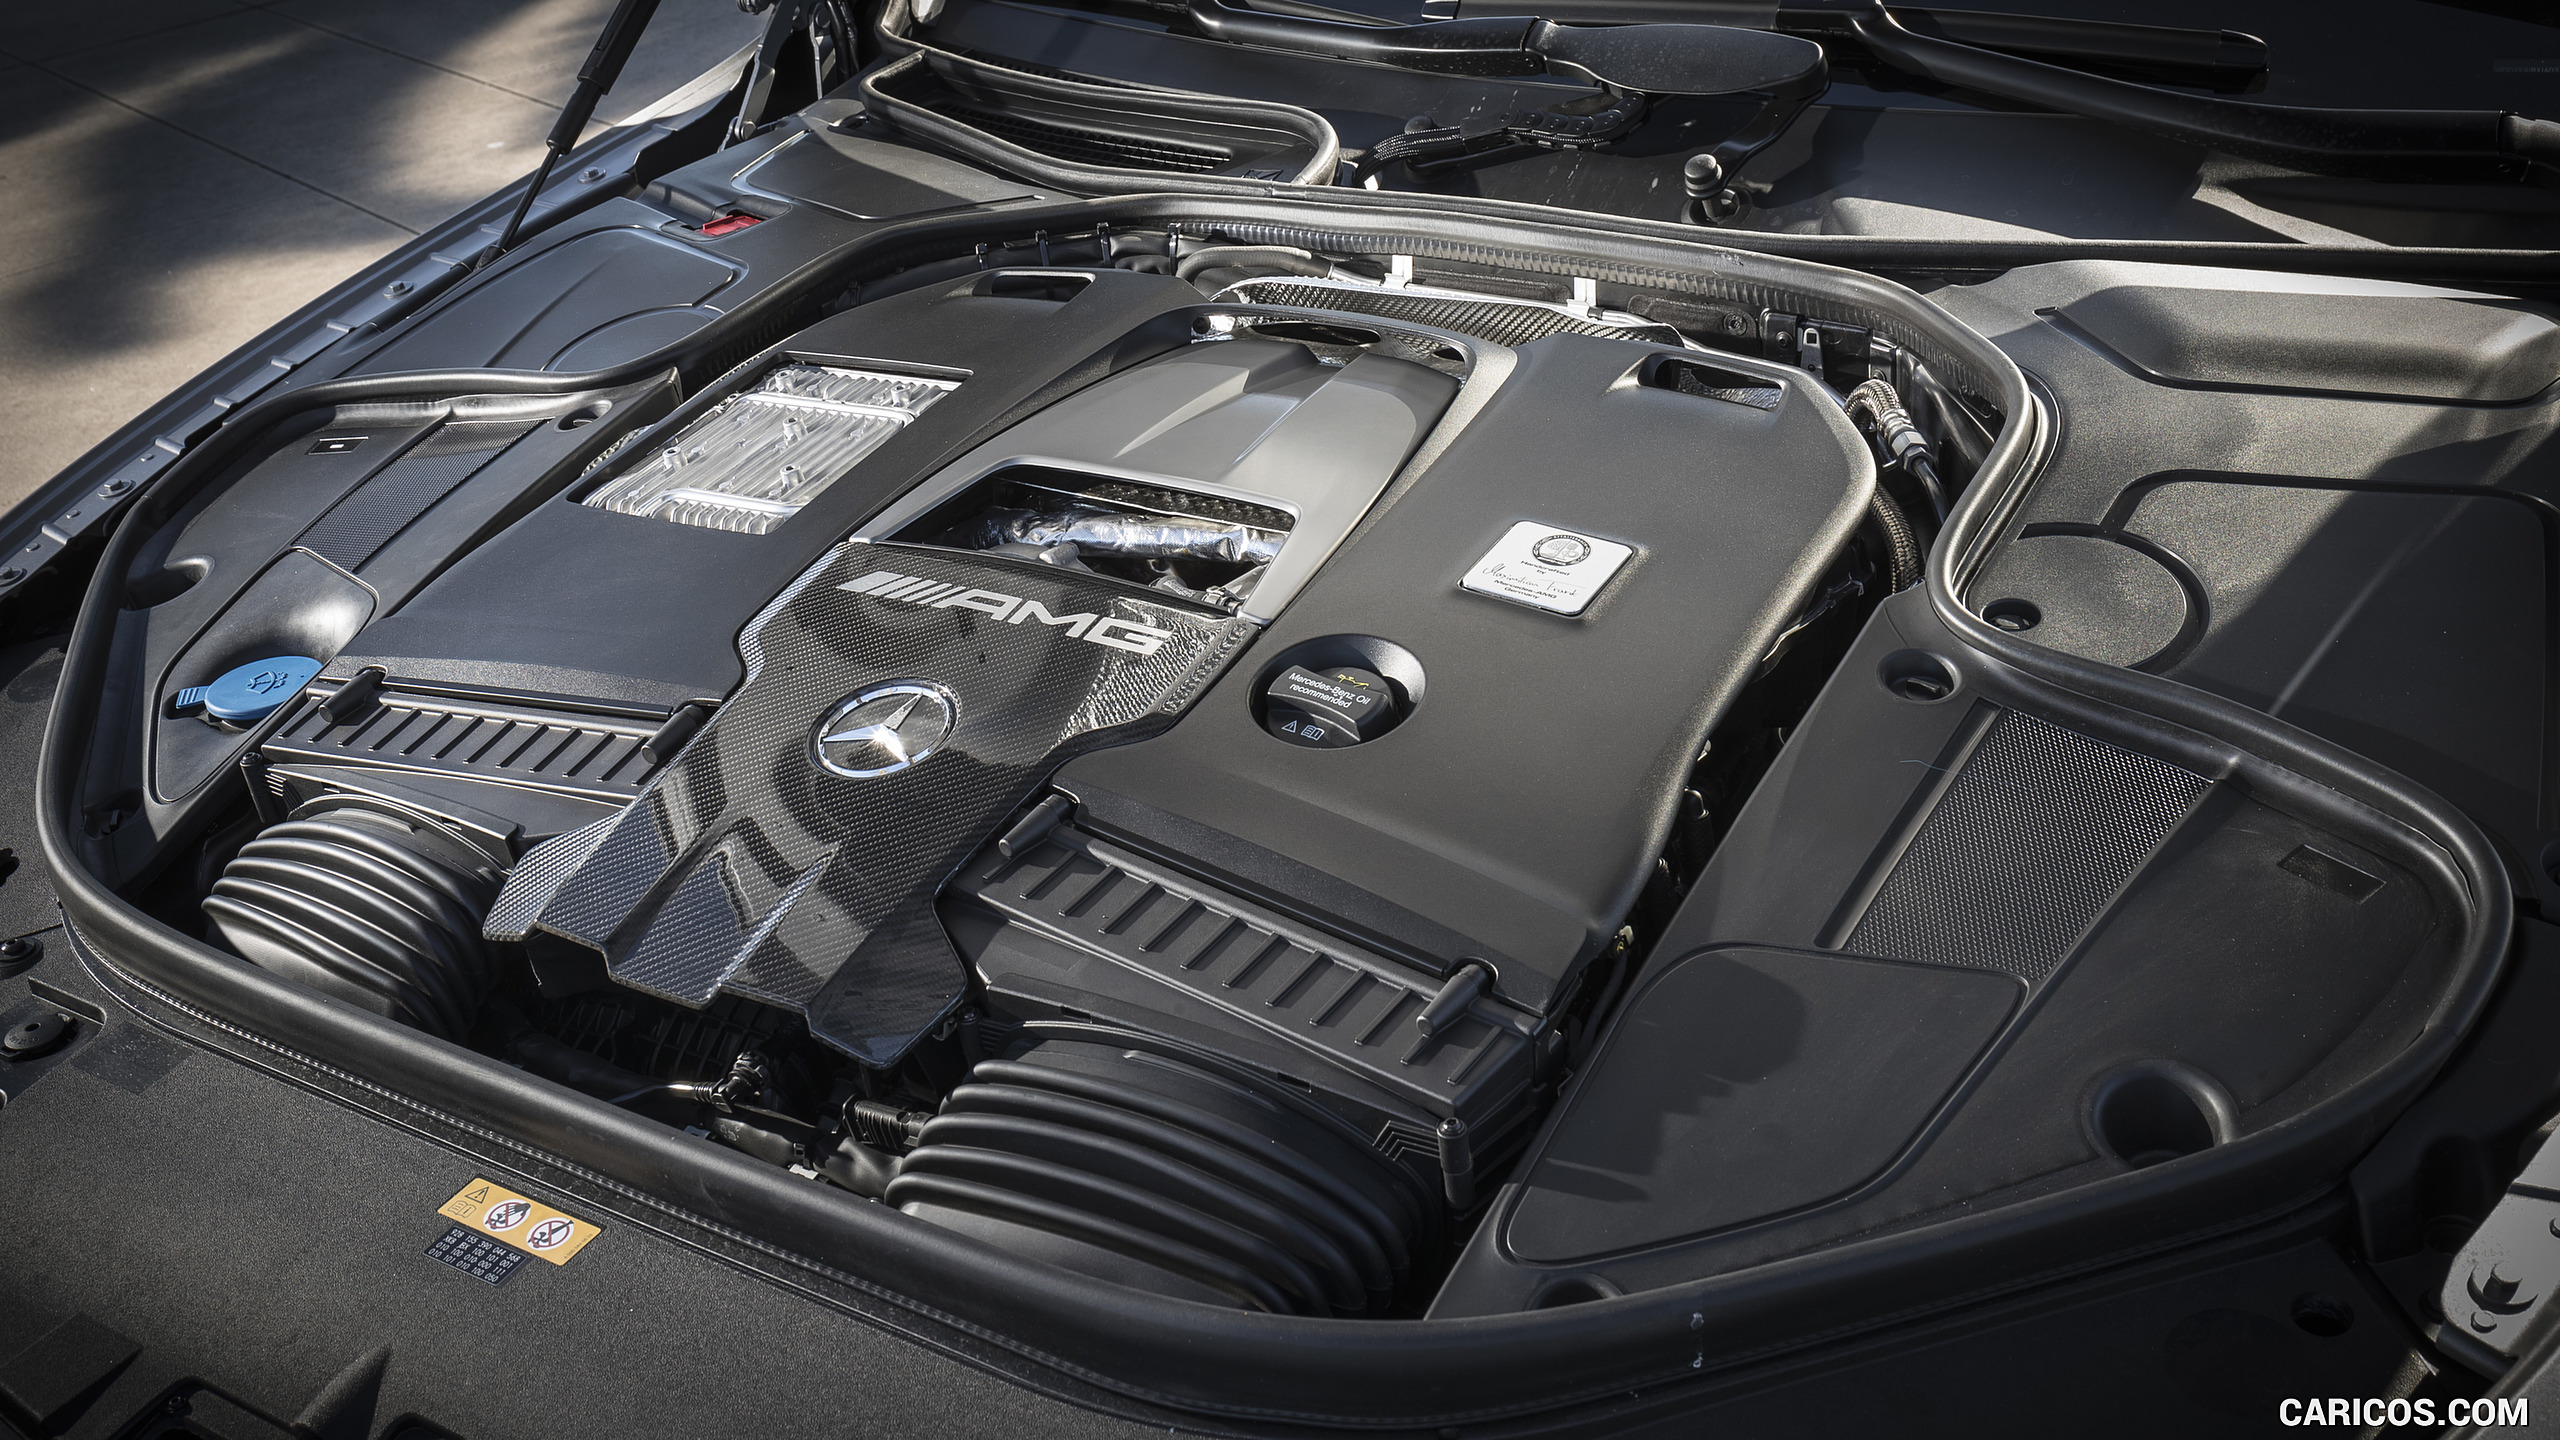 2018 Mercedes-AMG S63 Cabrio (US-Spec) - Engine, #97 of 98